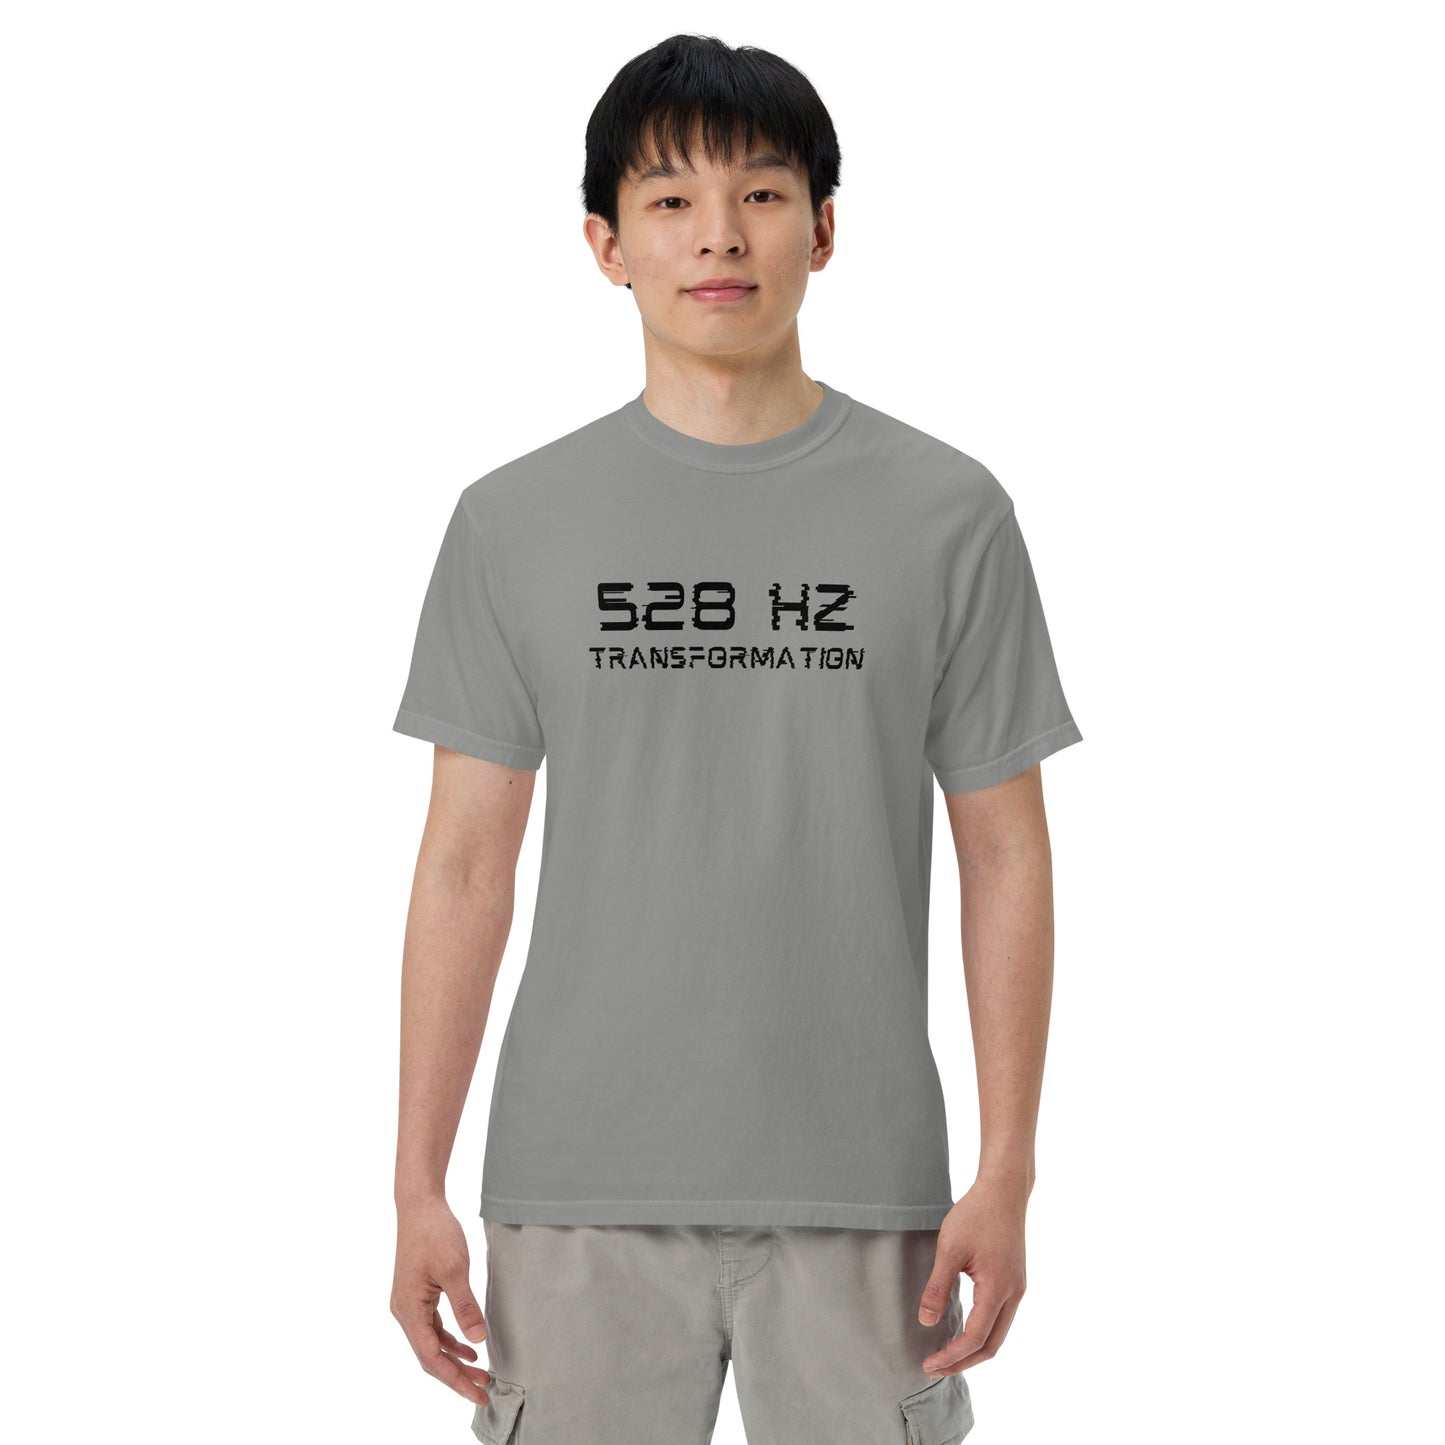 528 Hz Transformation Men’s garment-dyed heavyweight t-shirt